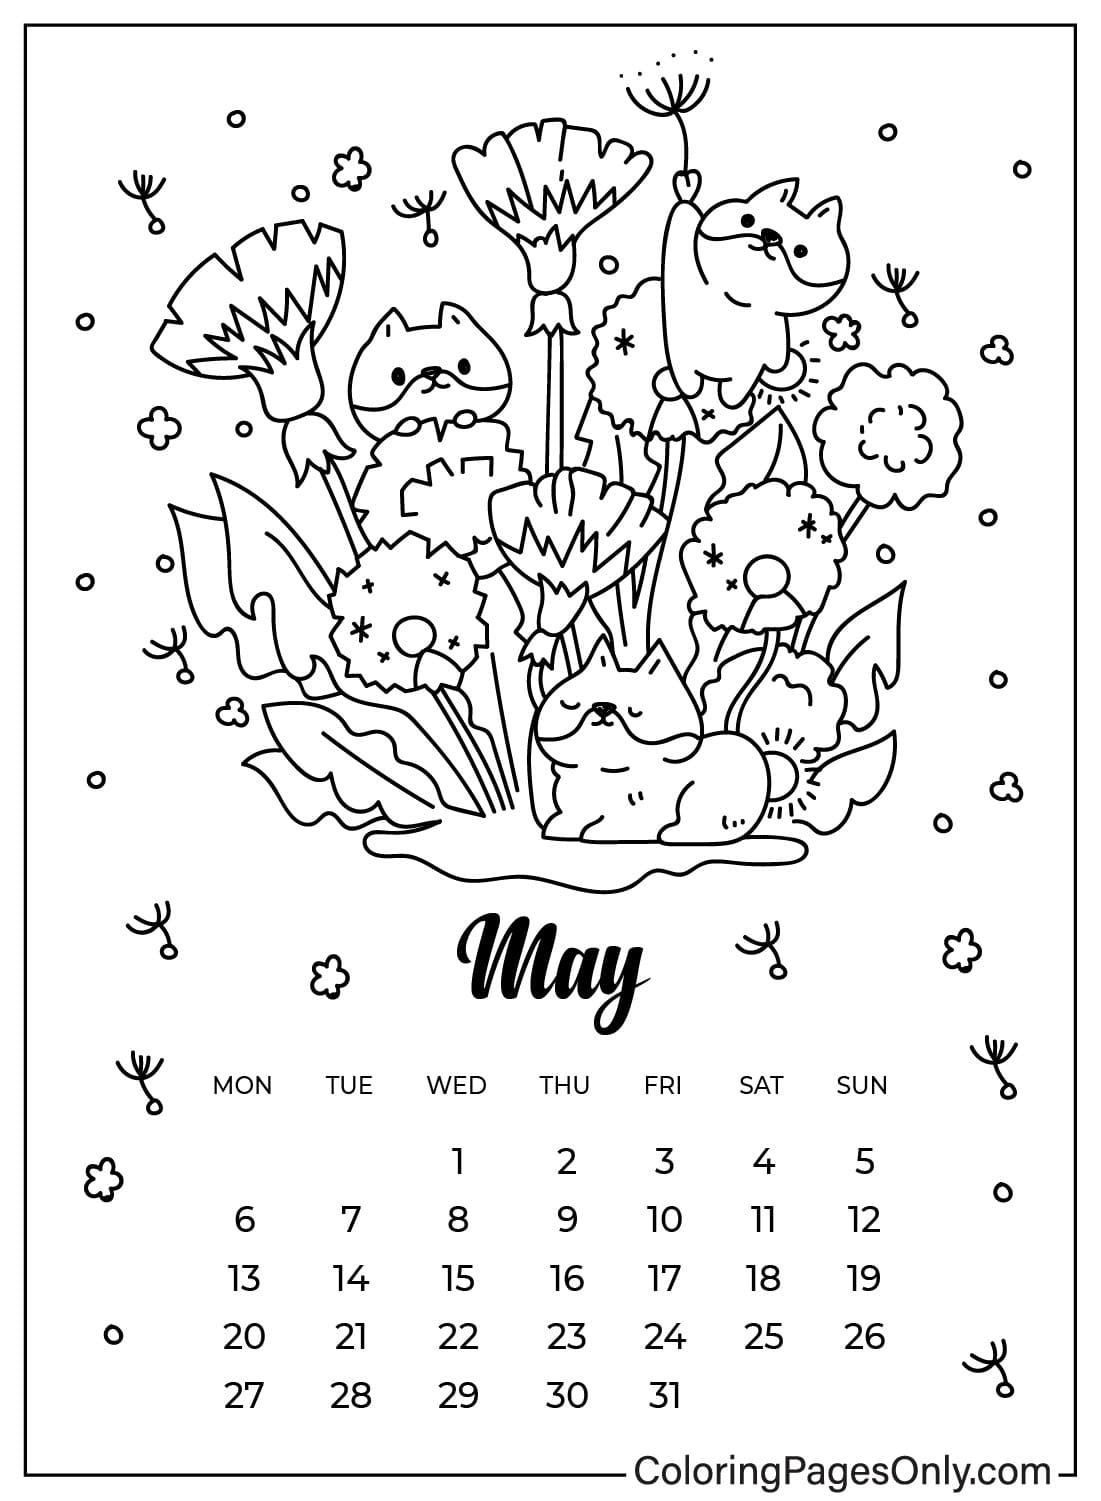 Folha para colorir do calendário de maio para crianças de maio